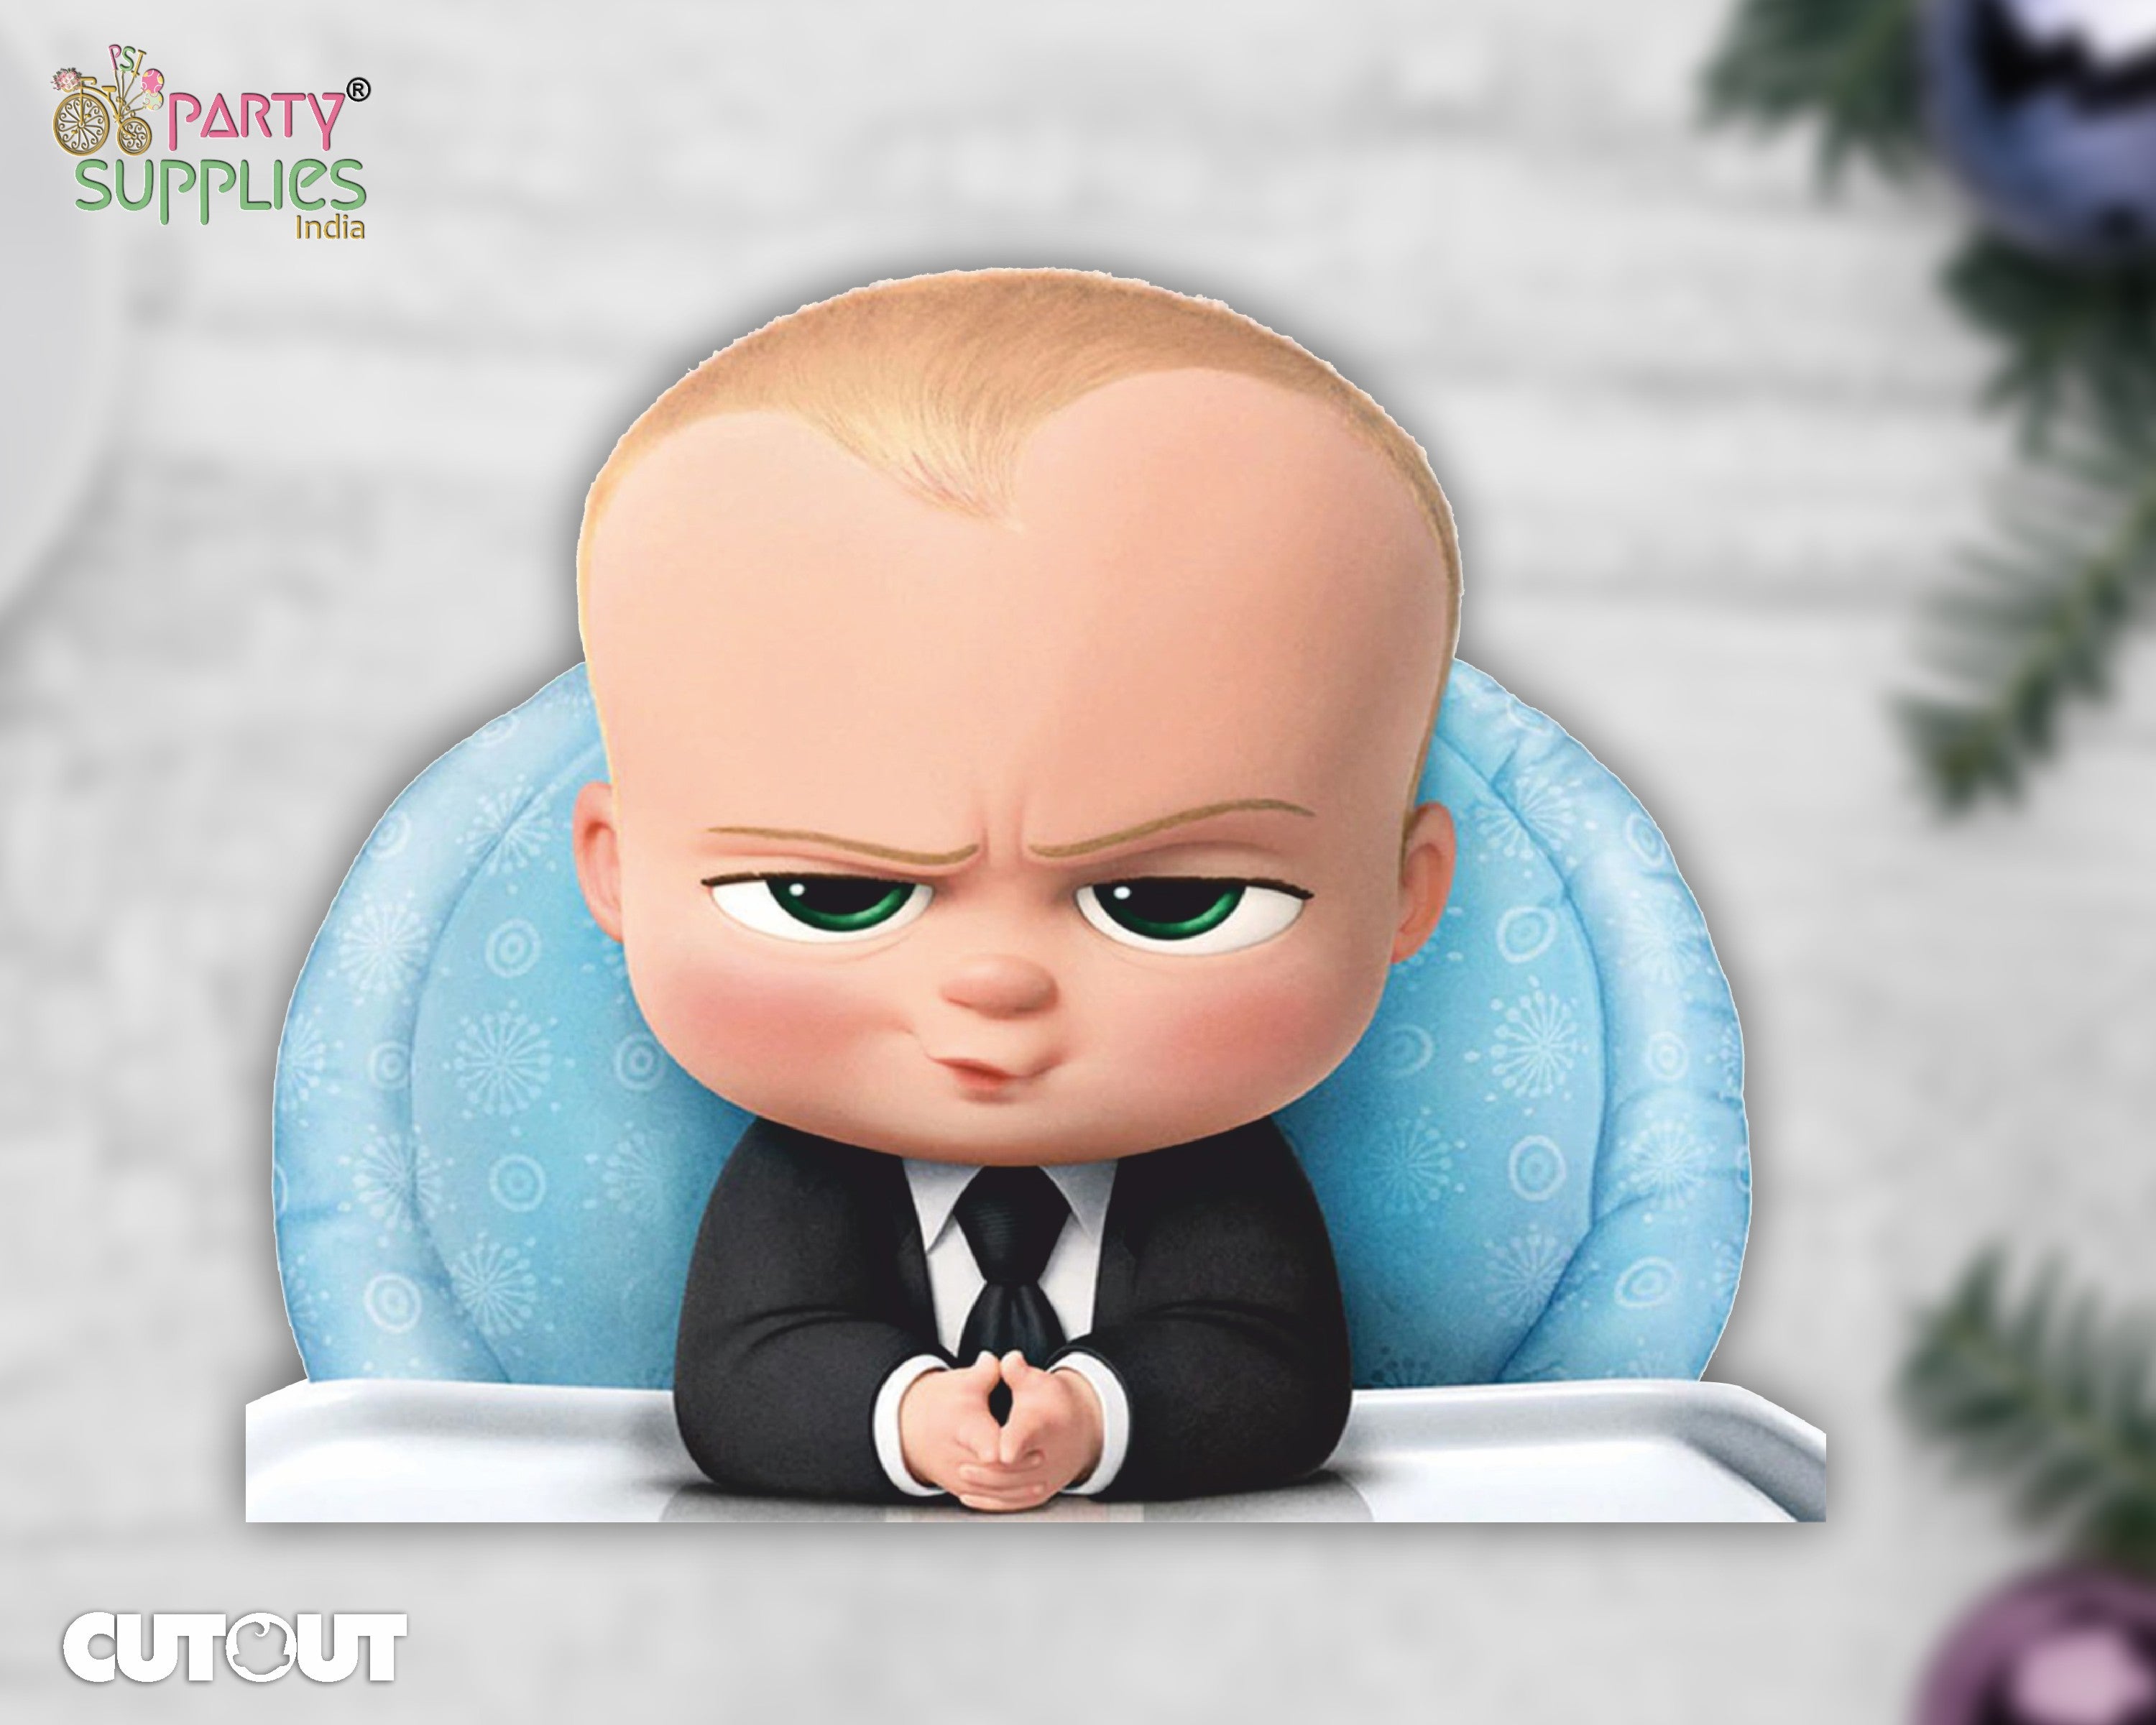 PSI Boss Baby Theme Cutout - 08